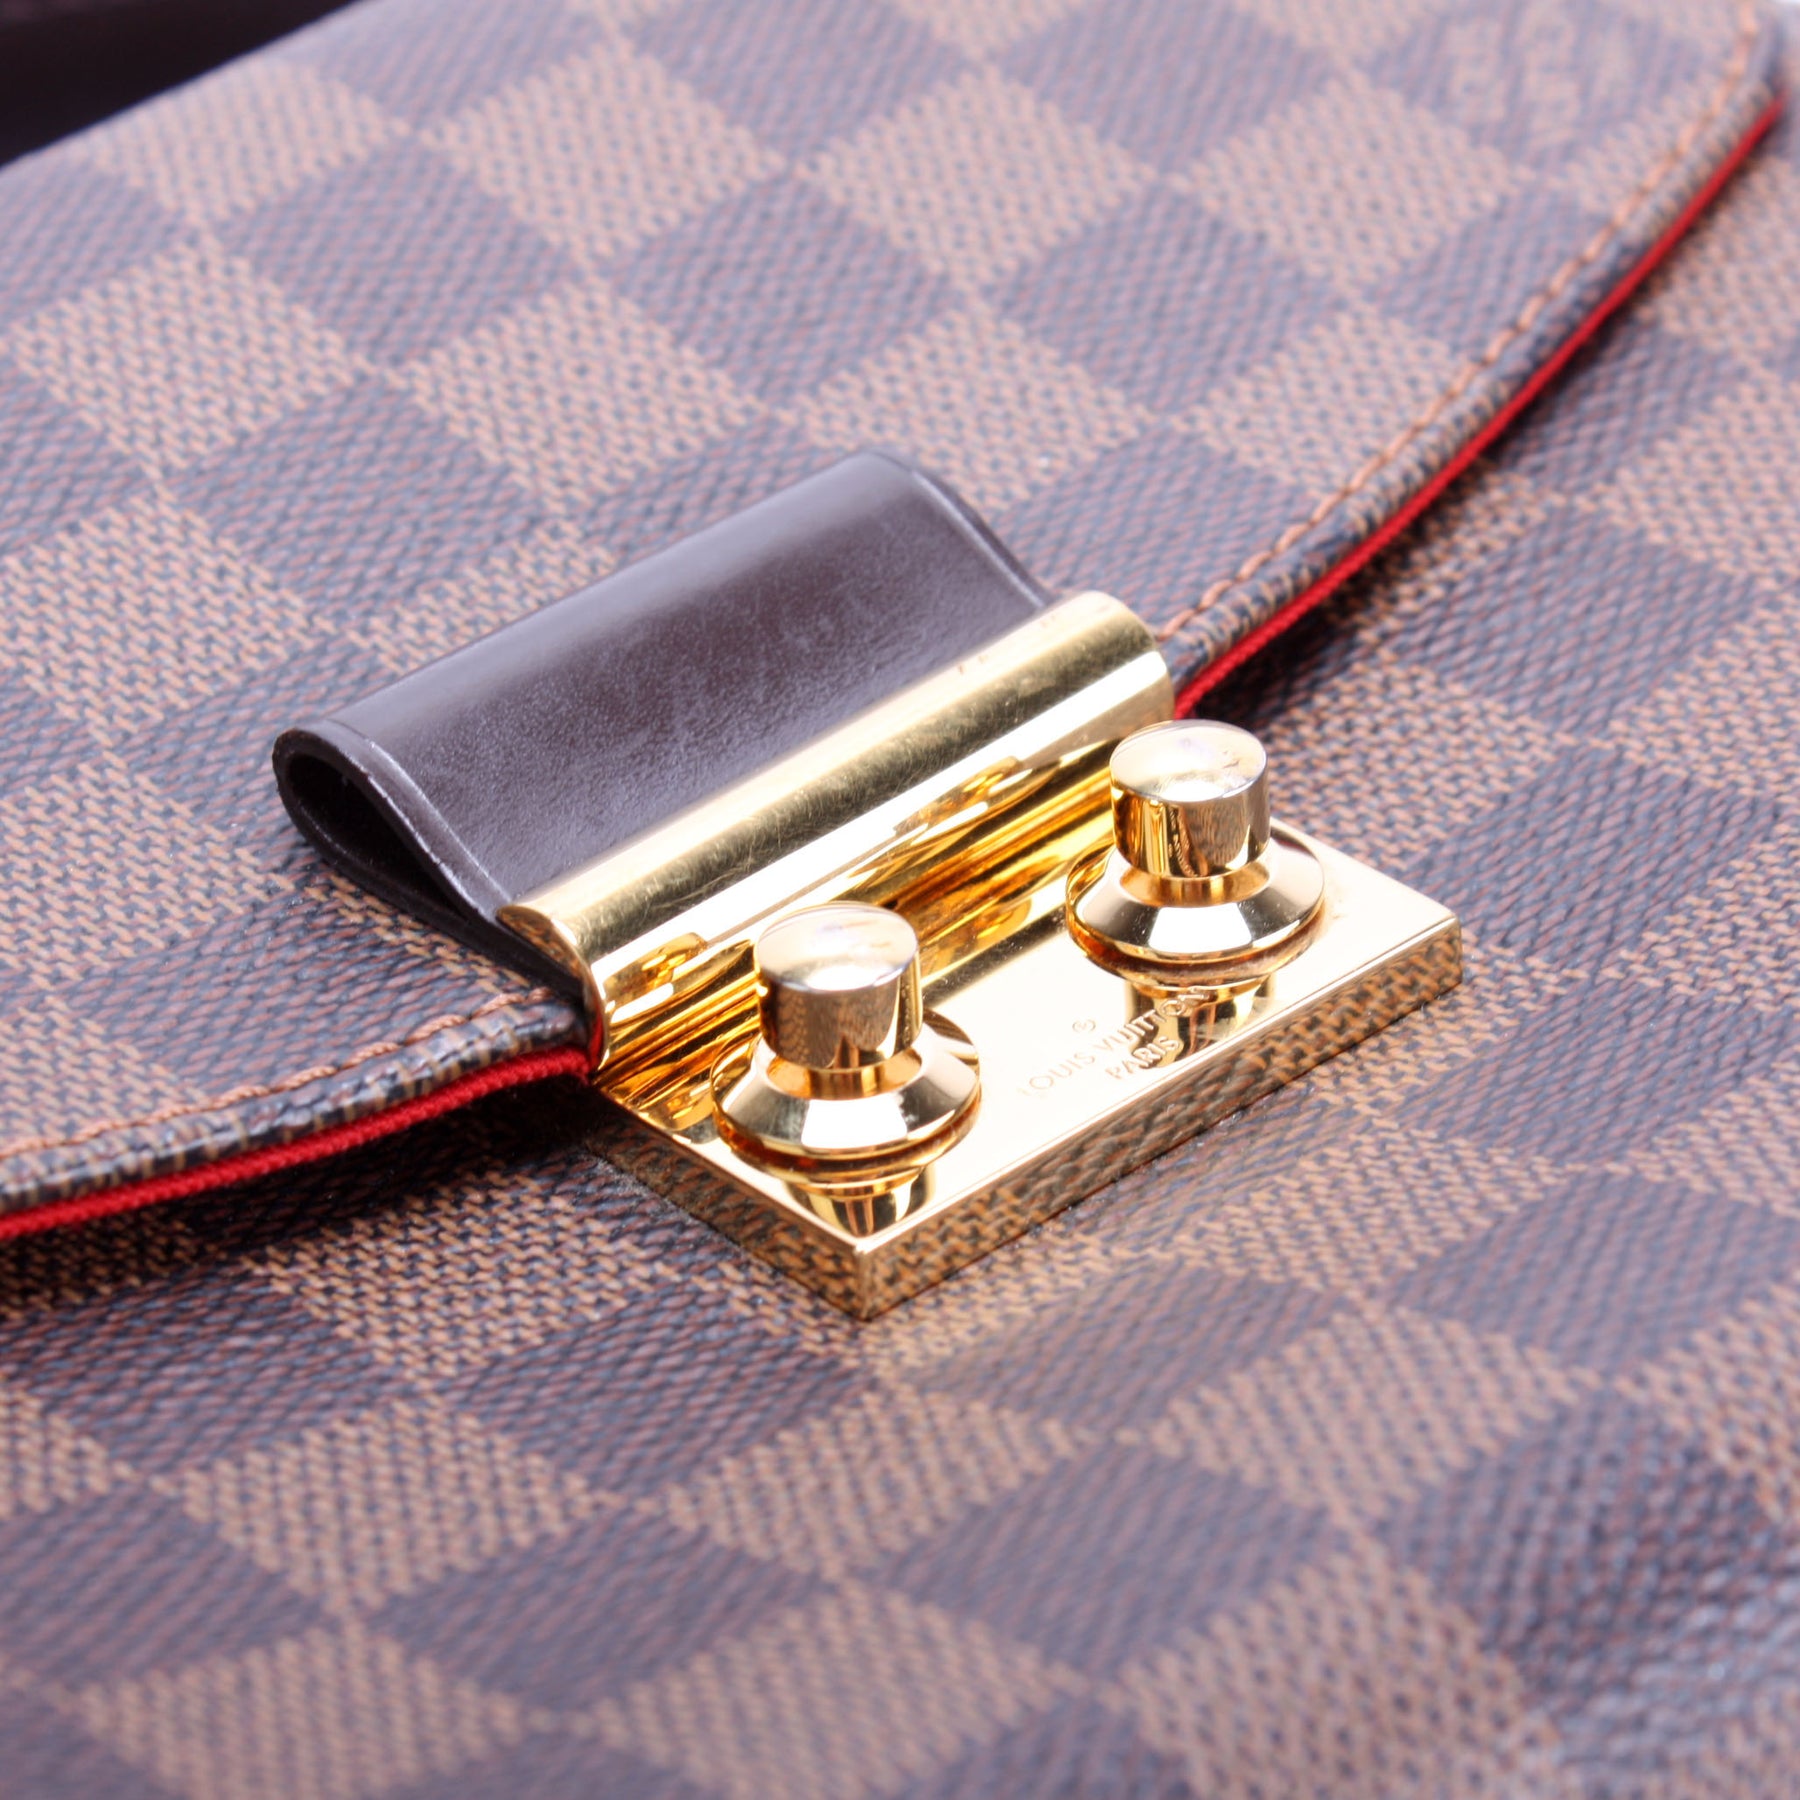 Louis Vuitton Authentic Croisette Damier Ebene Chain Wallet Come